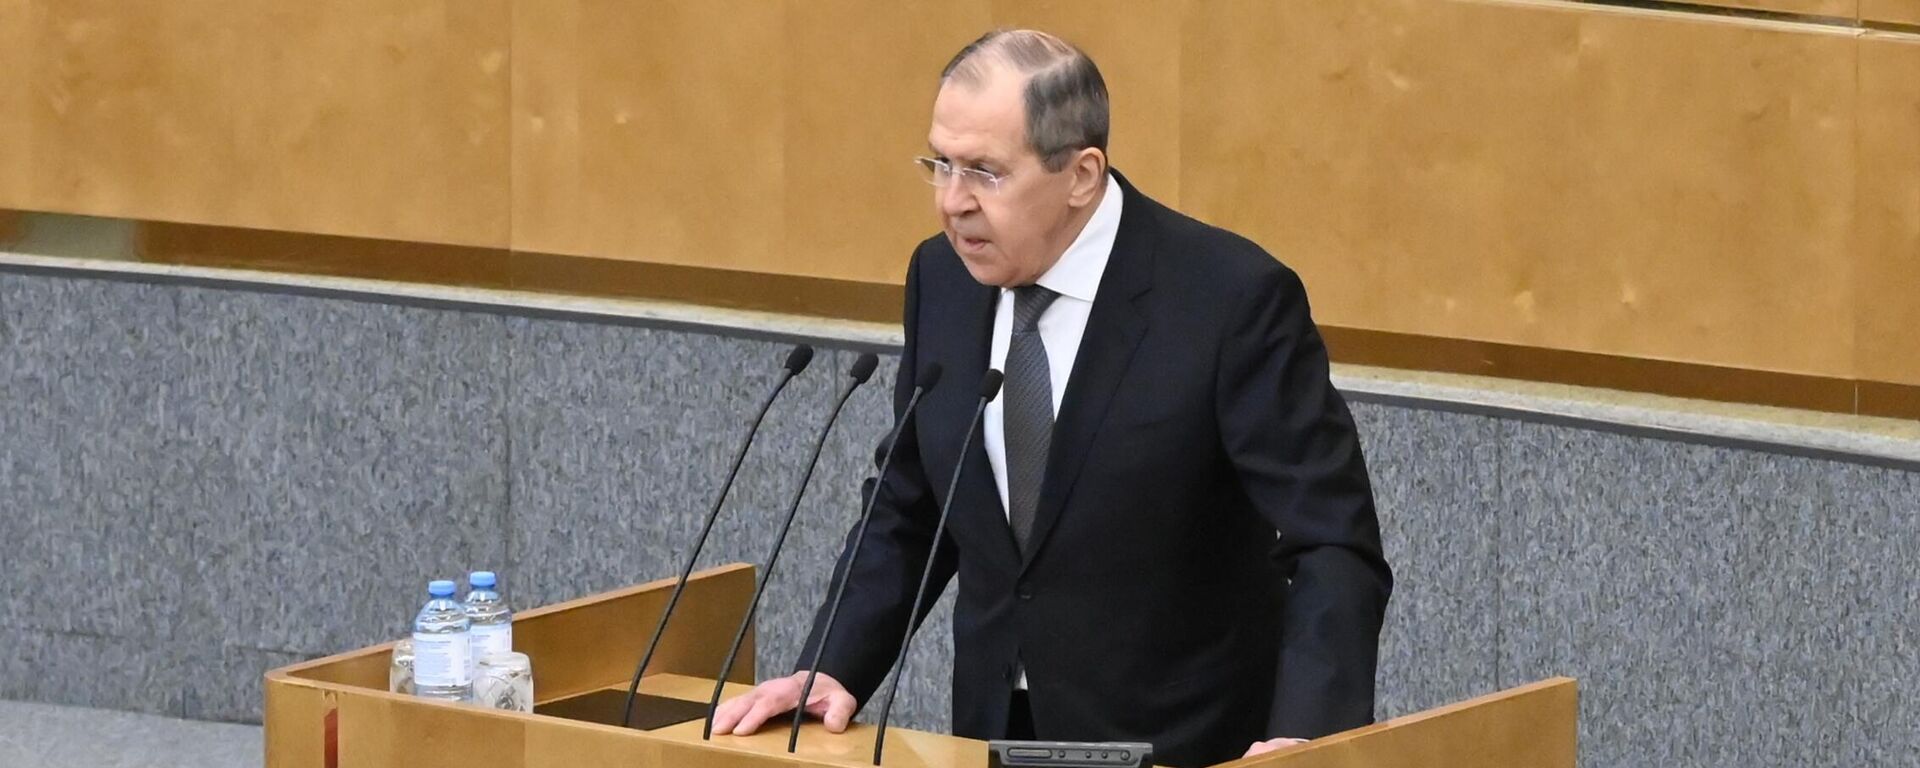 Chanceler russo, Sergei Lavrov, fala na sessão plenária da câmara baixa do Parlamento da Rússia, Moscou, 26 de janeiro de 2022 - Sputnik Brasil, 1920, 26.01.2022